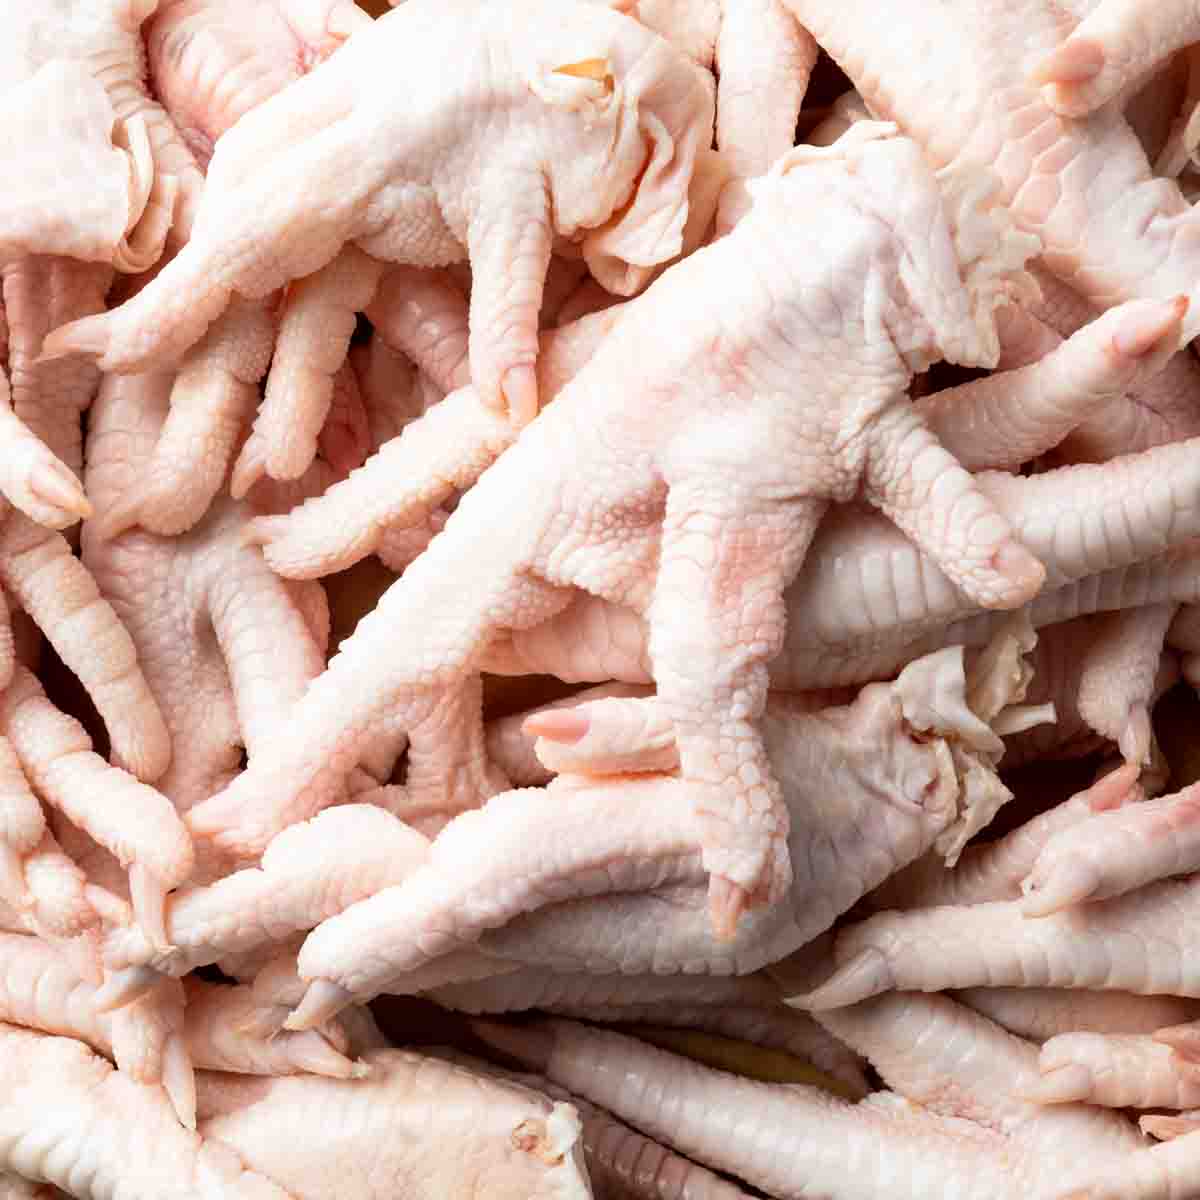 A close up of chicken feet.